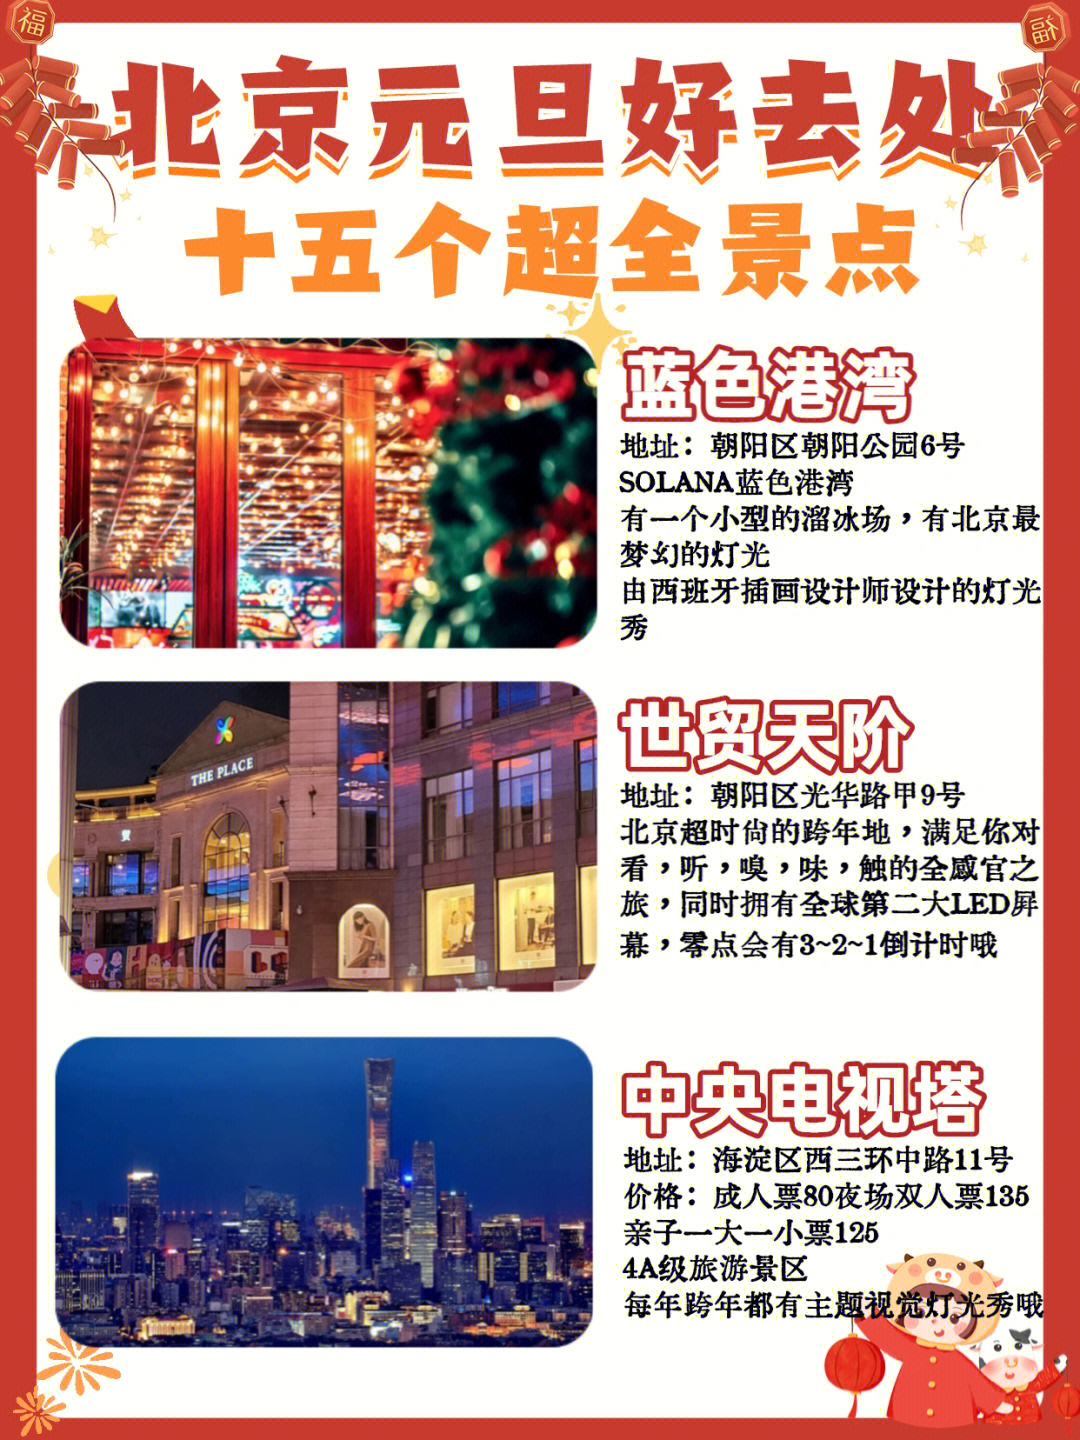 上海环球金融中心观光厅_上海环球金融中心观光厅门票价格_上海环球港促销中心